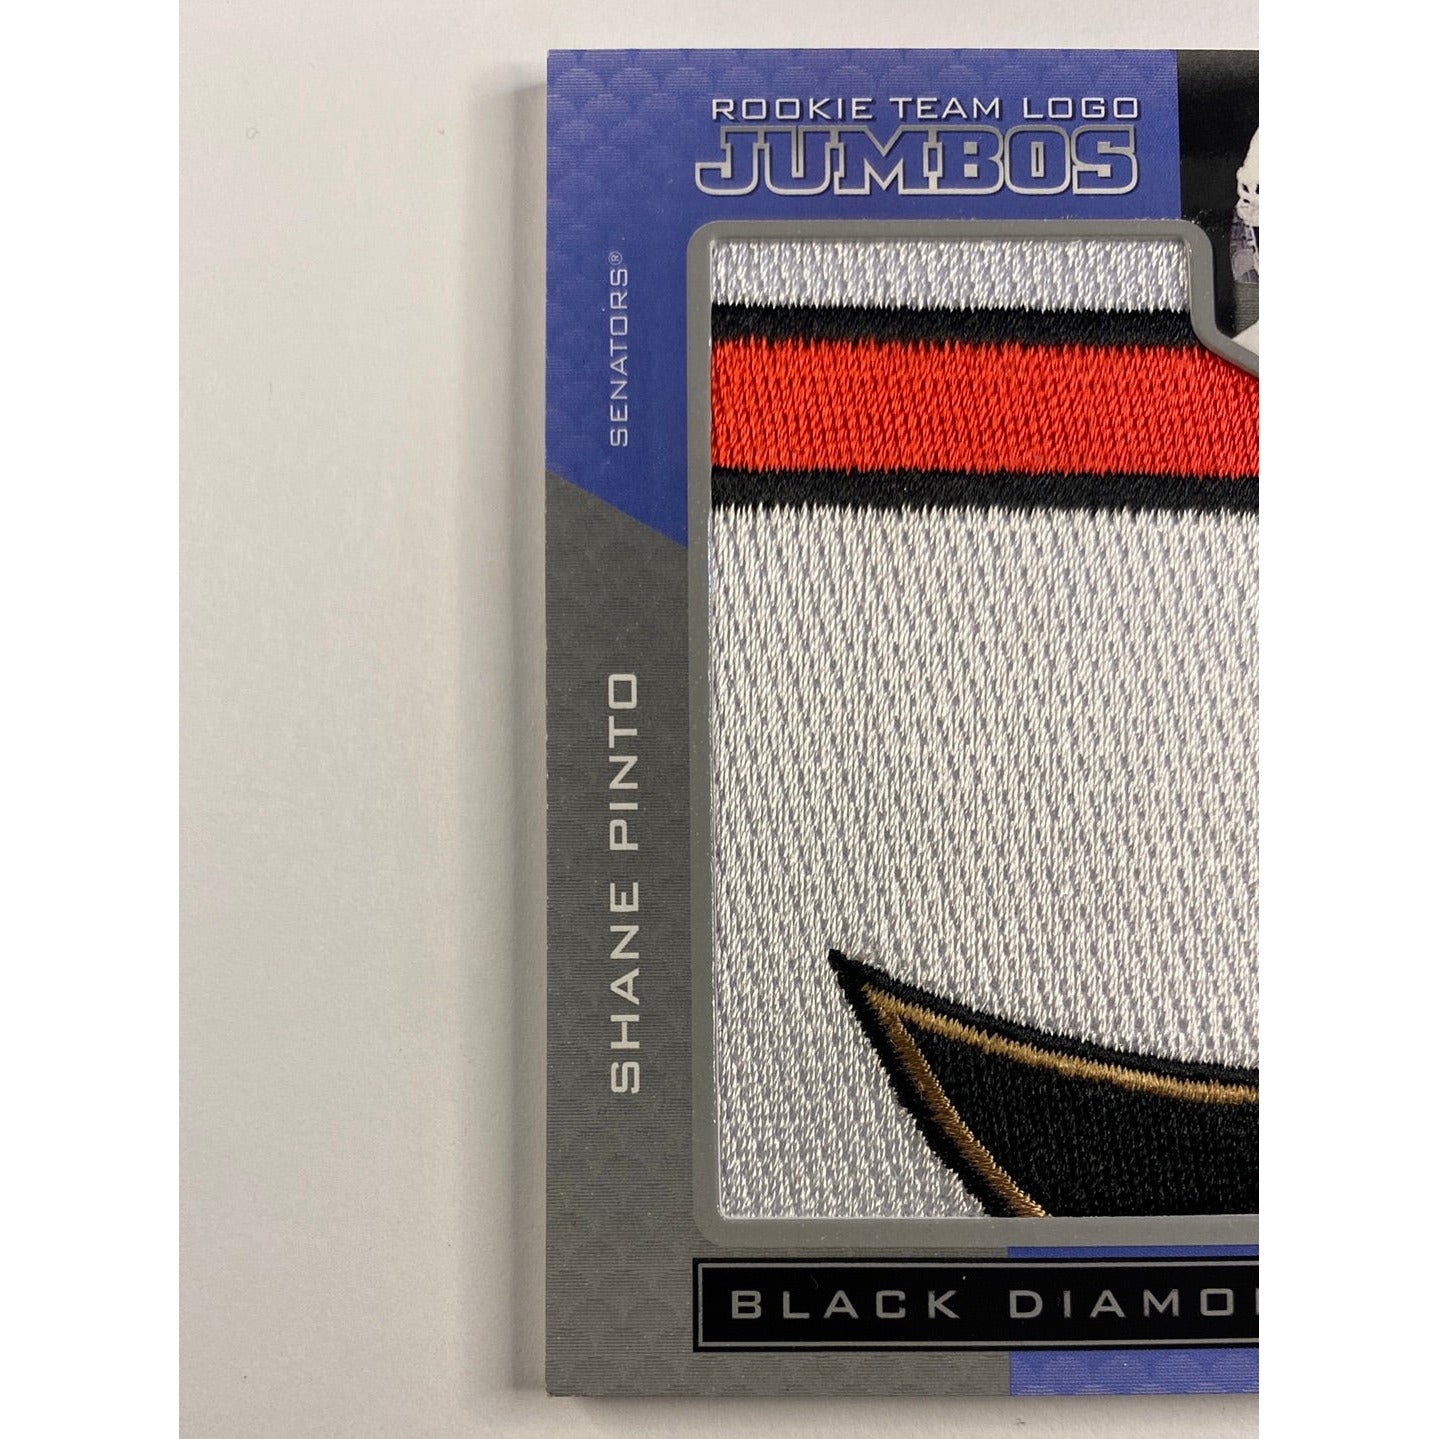 2021-22 Black Diamond Shane Pinto Rookie Team Logo Jumbos